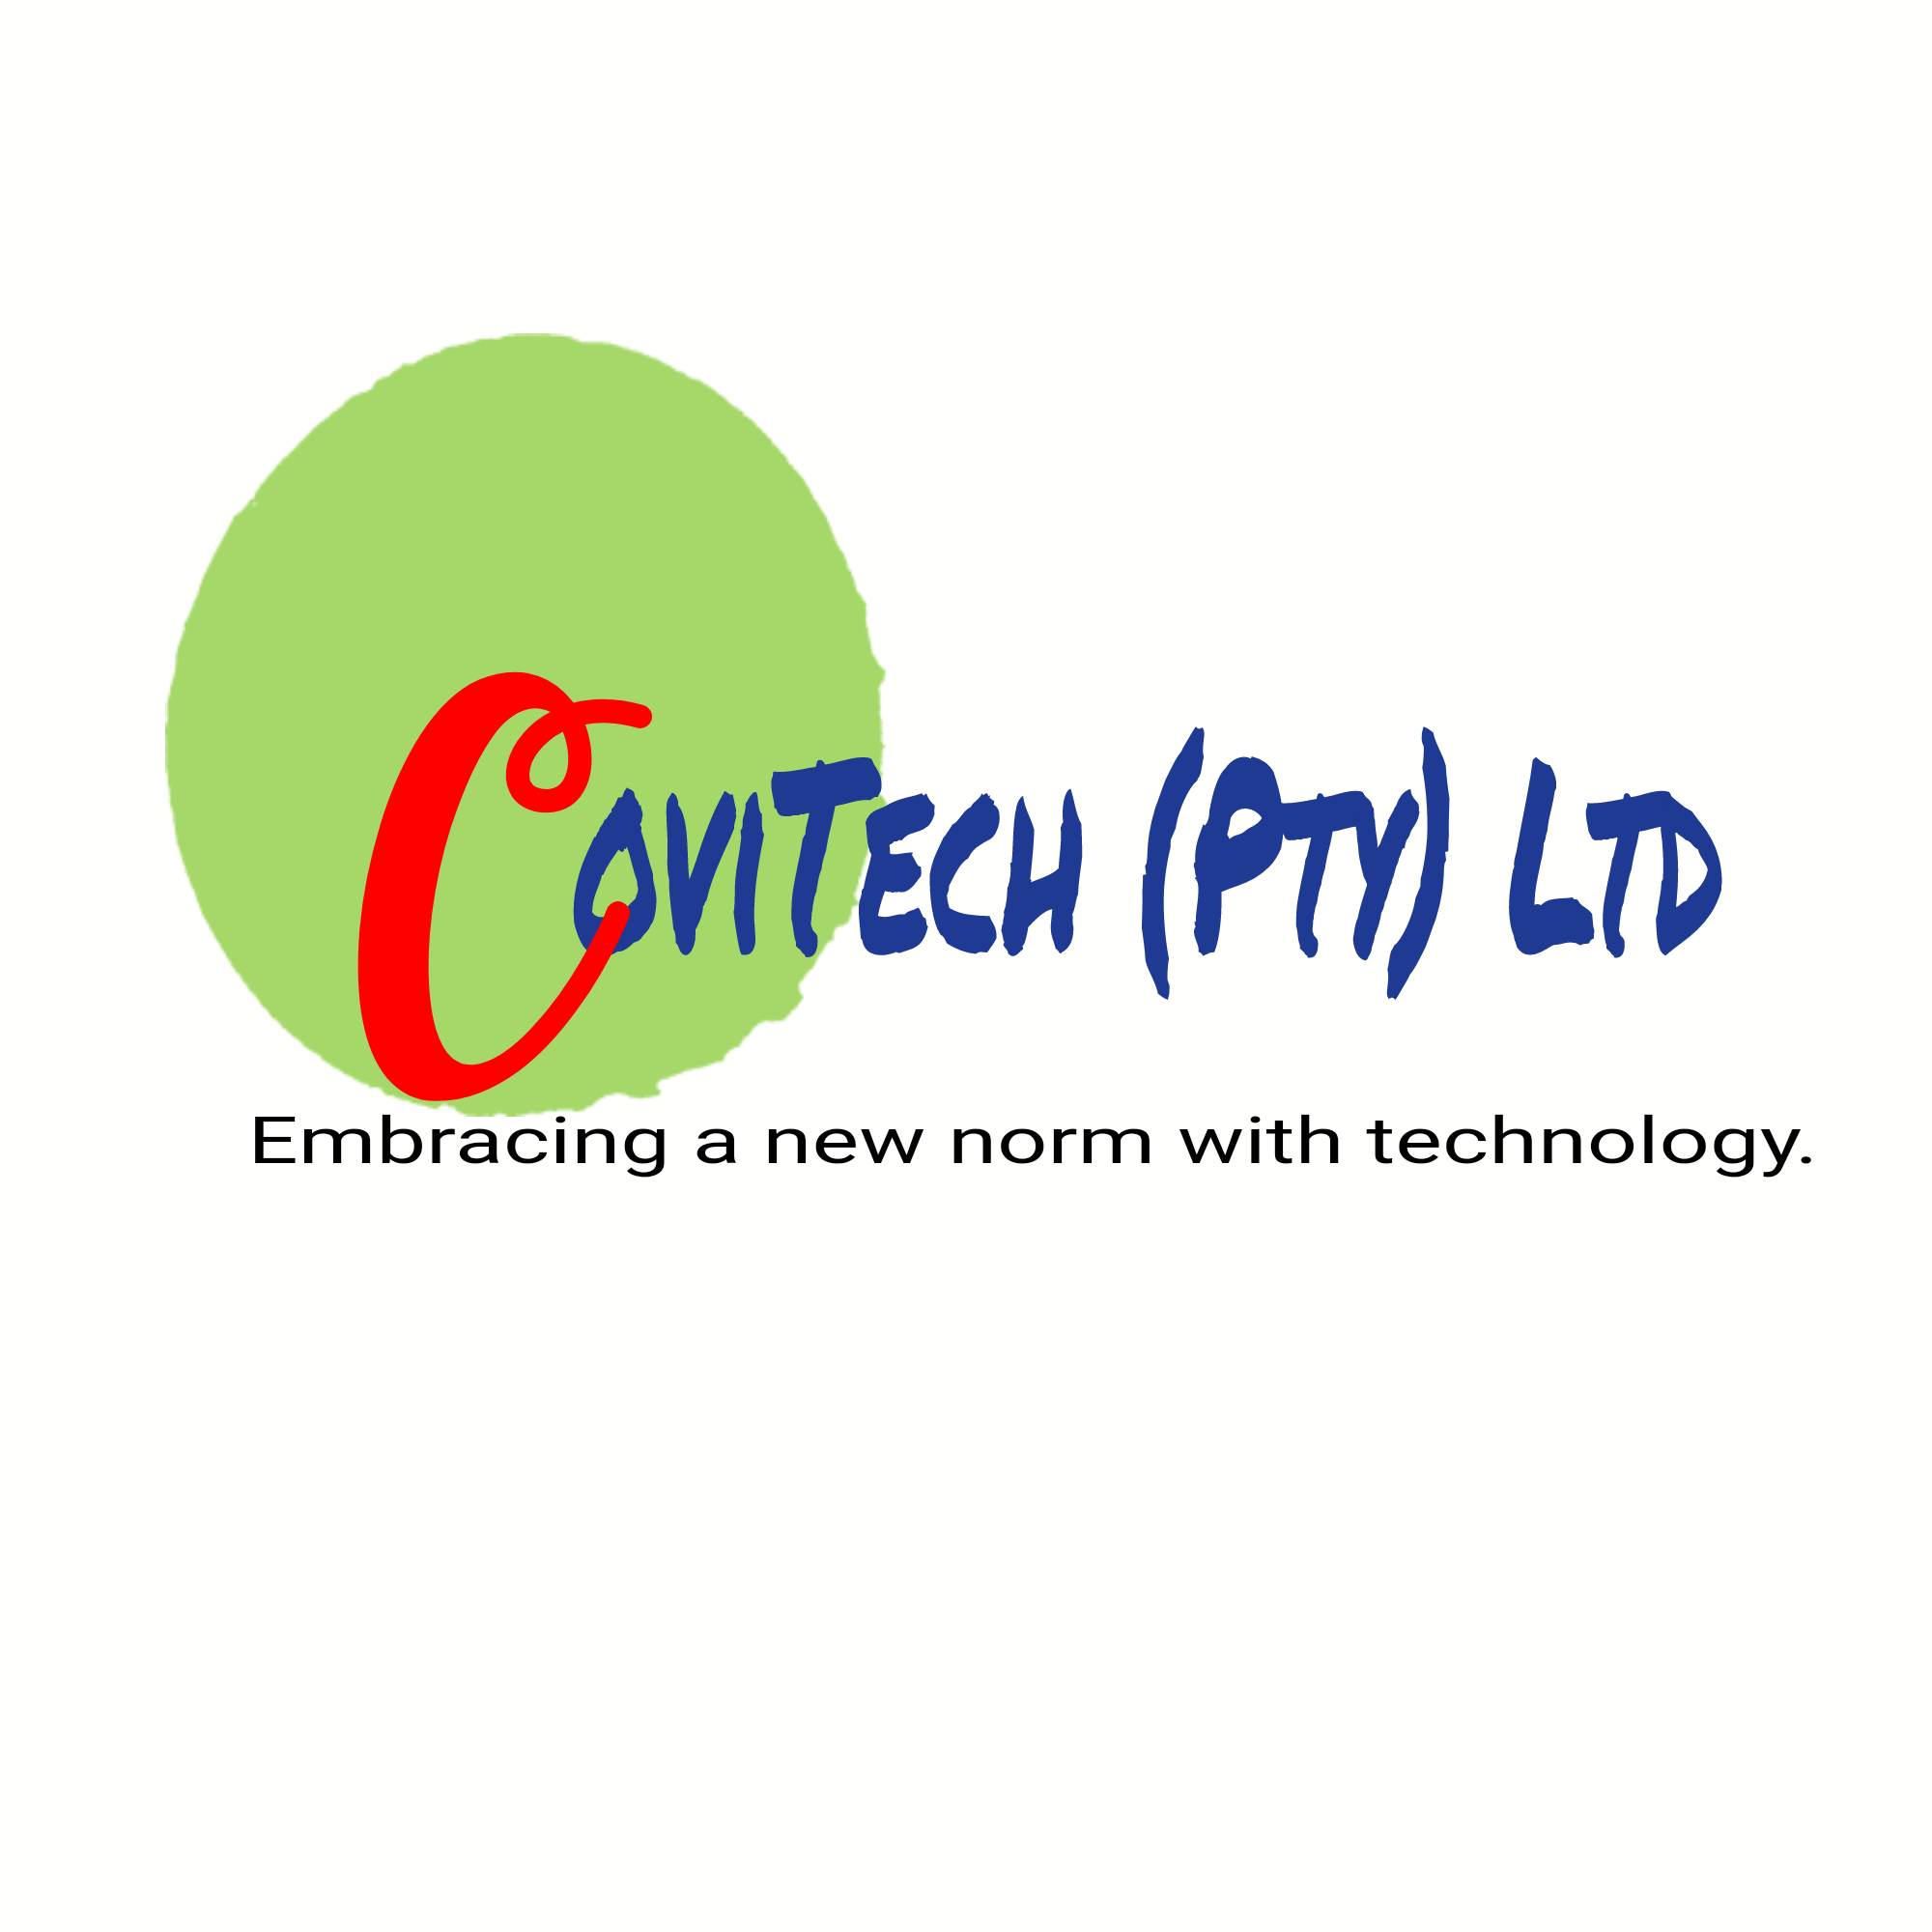 Covitech Pty Ltd